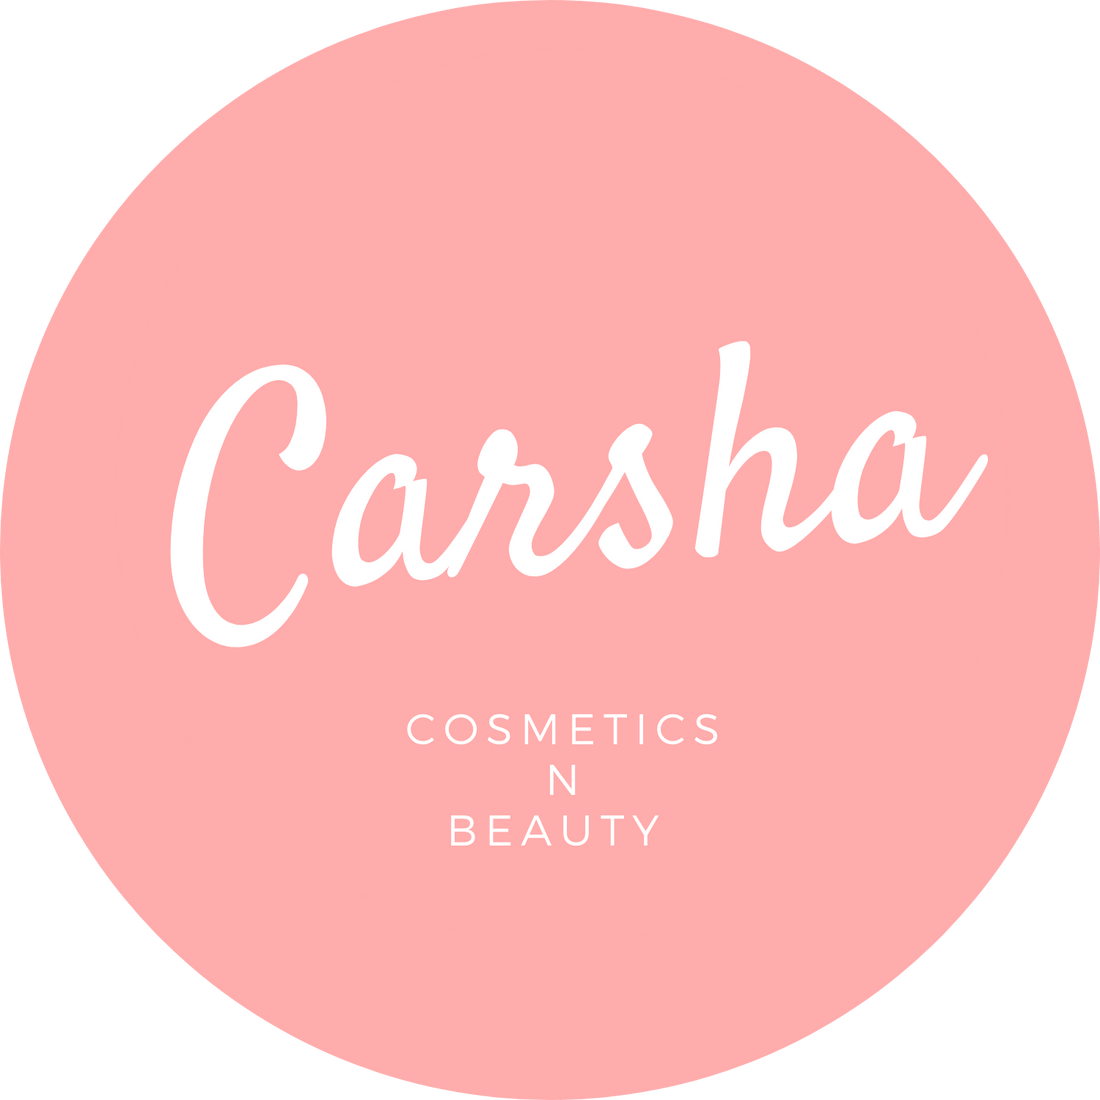 カーシャ ロゴ | 美容の卸売と小売